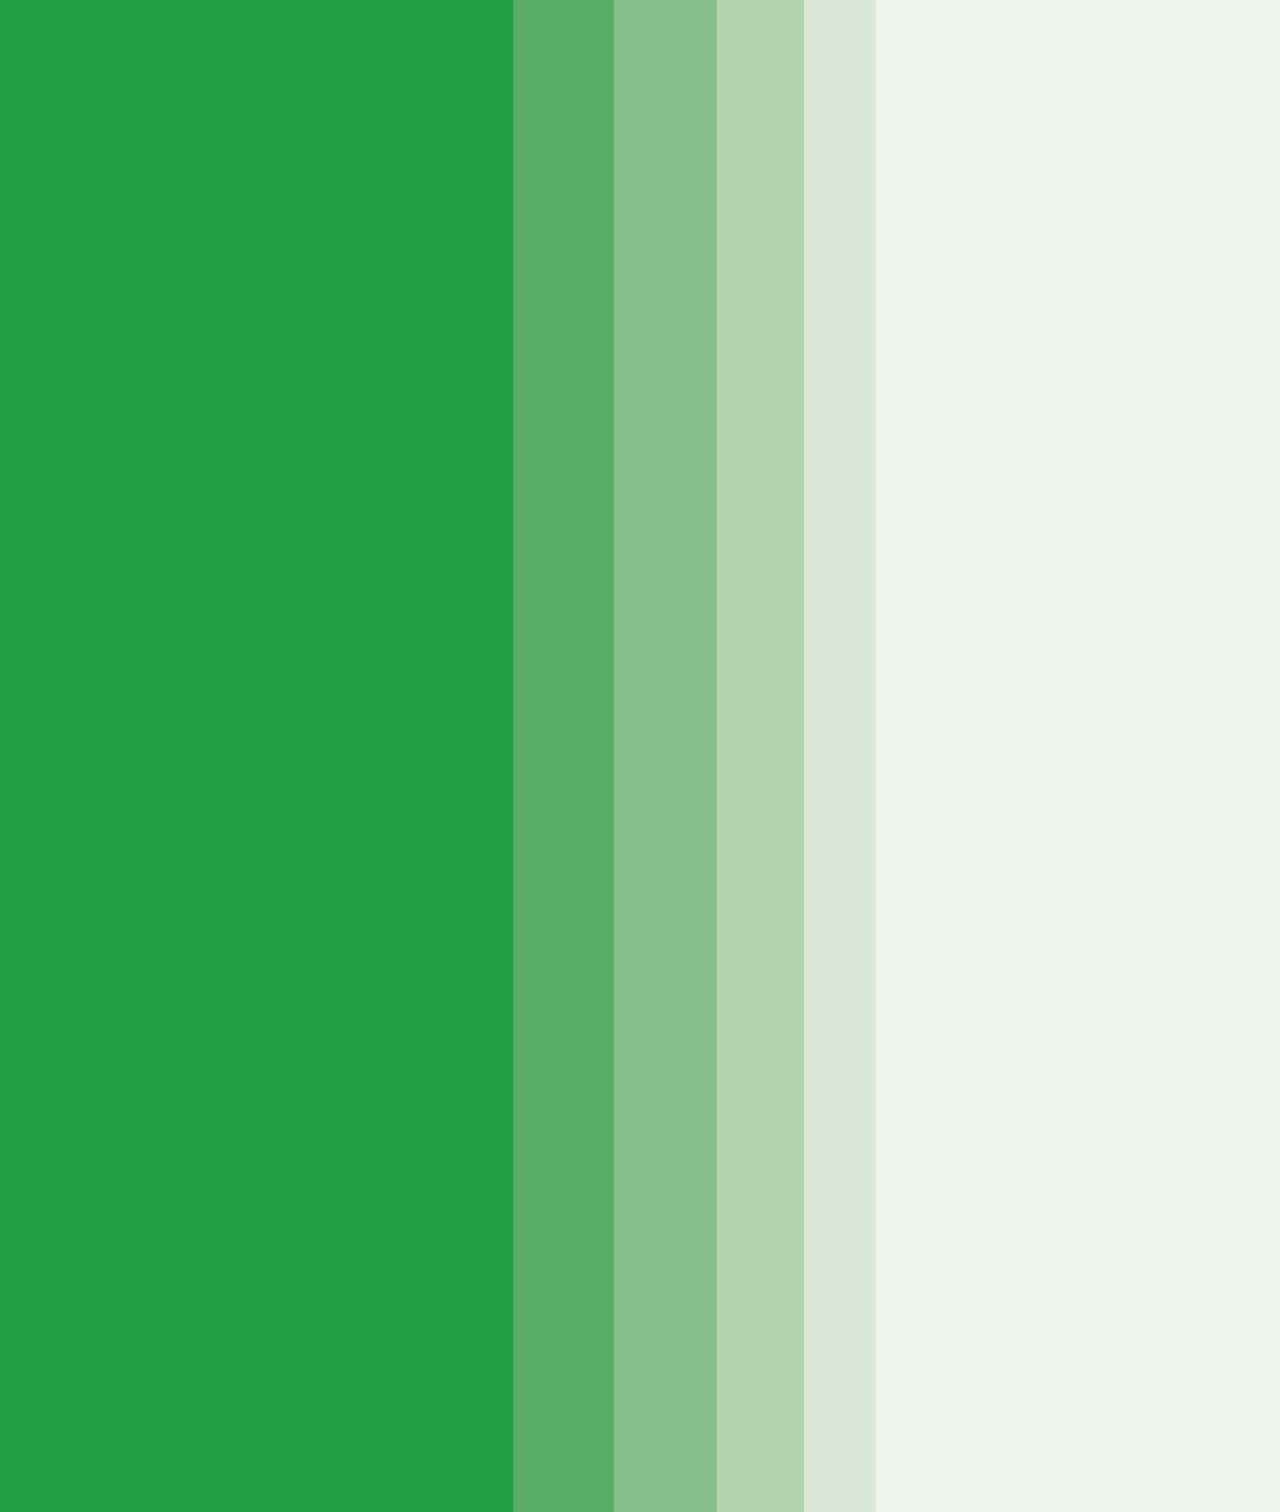 Visuel identitet CAC - grøn farve